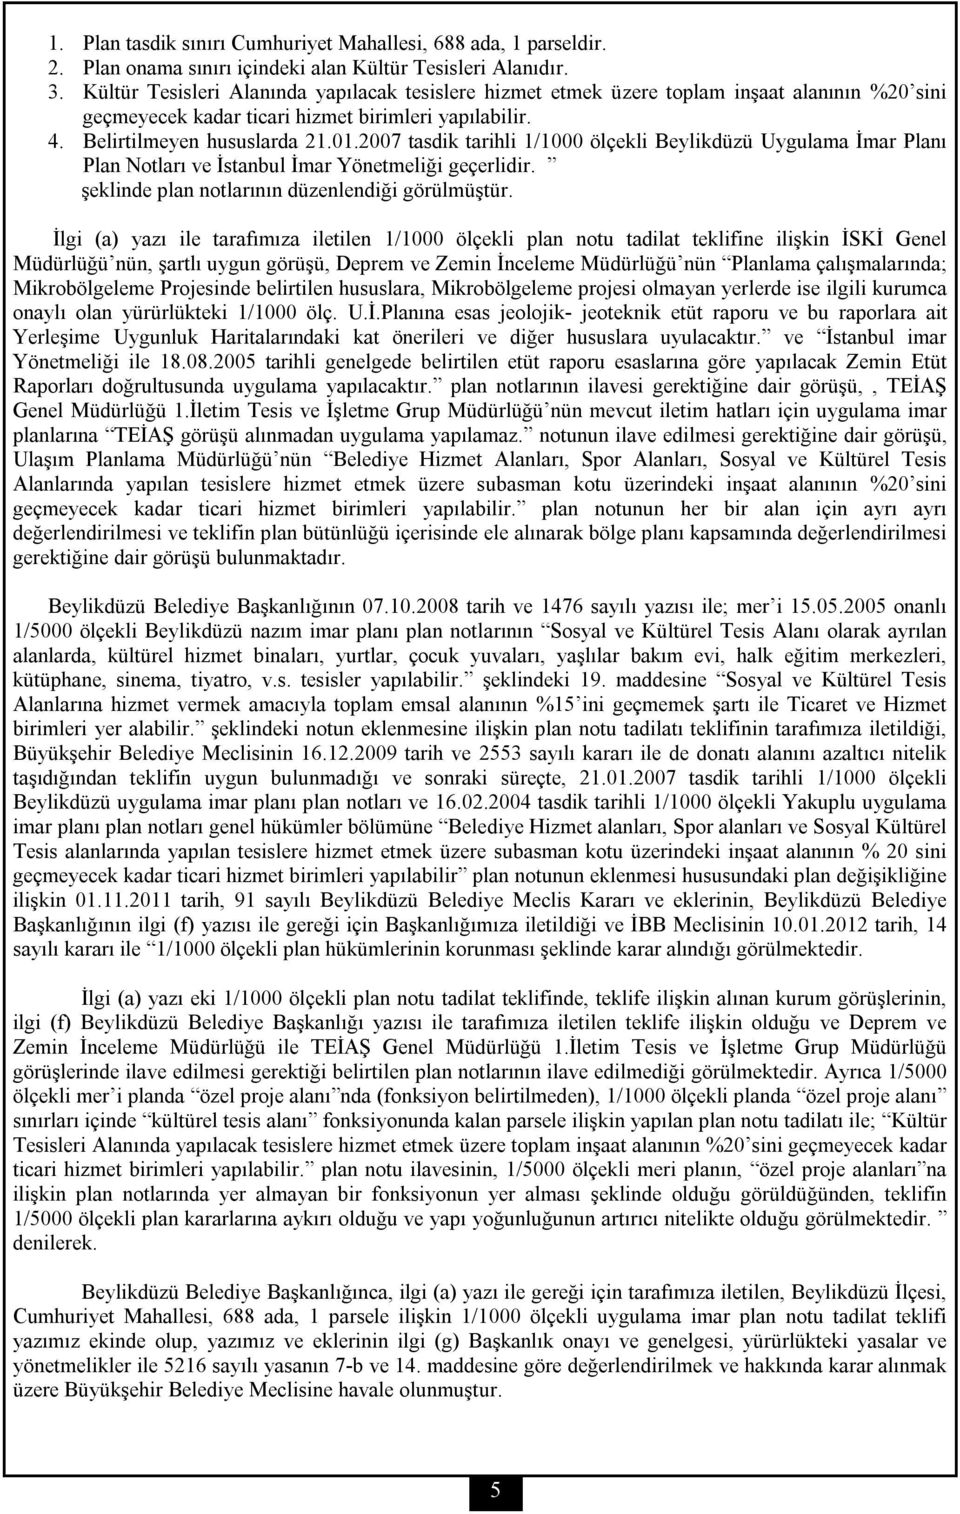 2007 tasdik tarihli 1/1000 ölçekli Beylikdüzü Uygulama İmar Planı Plan Notları ve İstanbul İmar Yönetmeliği geçerlidir. şeklinde plan notlarının düzenlendiği görülmüştür.